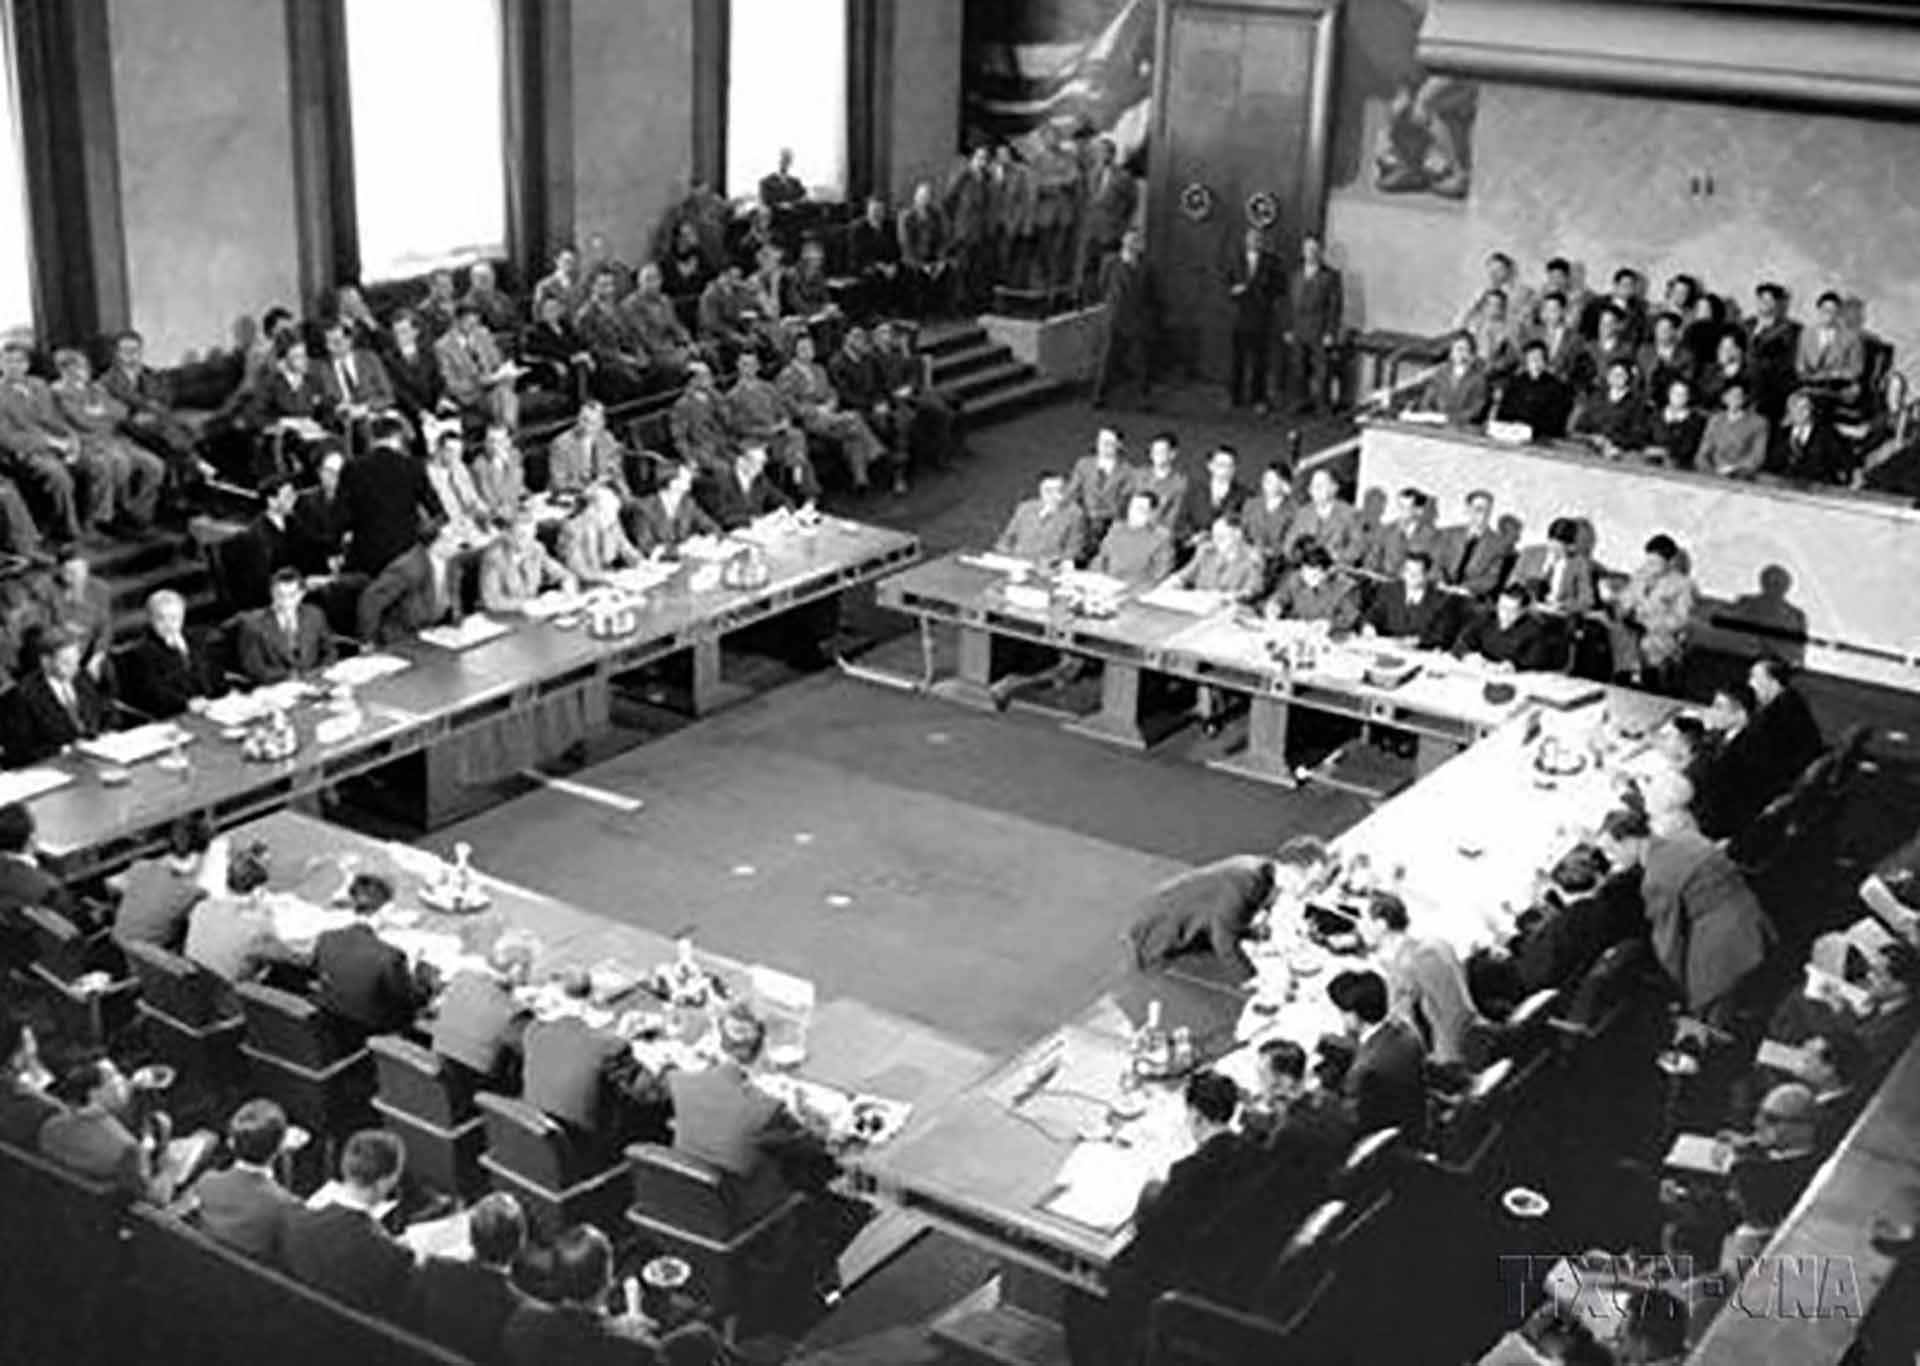 Hội nghị Geneva năm 1954 về Đông Dương là một thắng lợi của Việt Nam, thể hiện sách lược biết giành thắng lợi từng bước trong cuộc chiến tranh giải phóng dân tộc. (Nguồn: TTXVN)